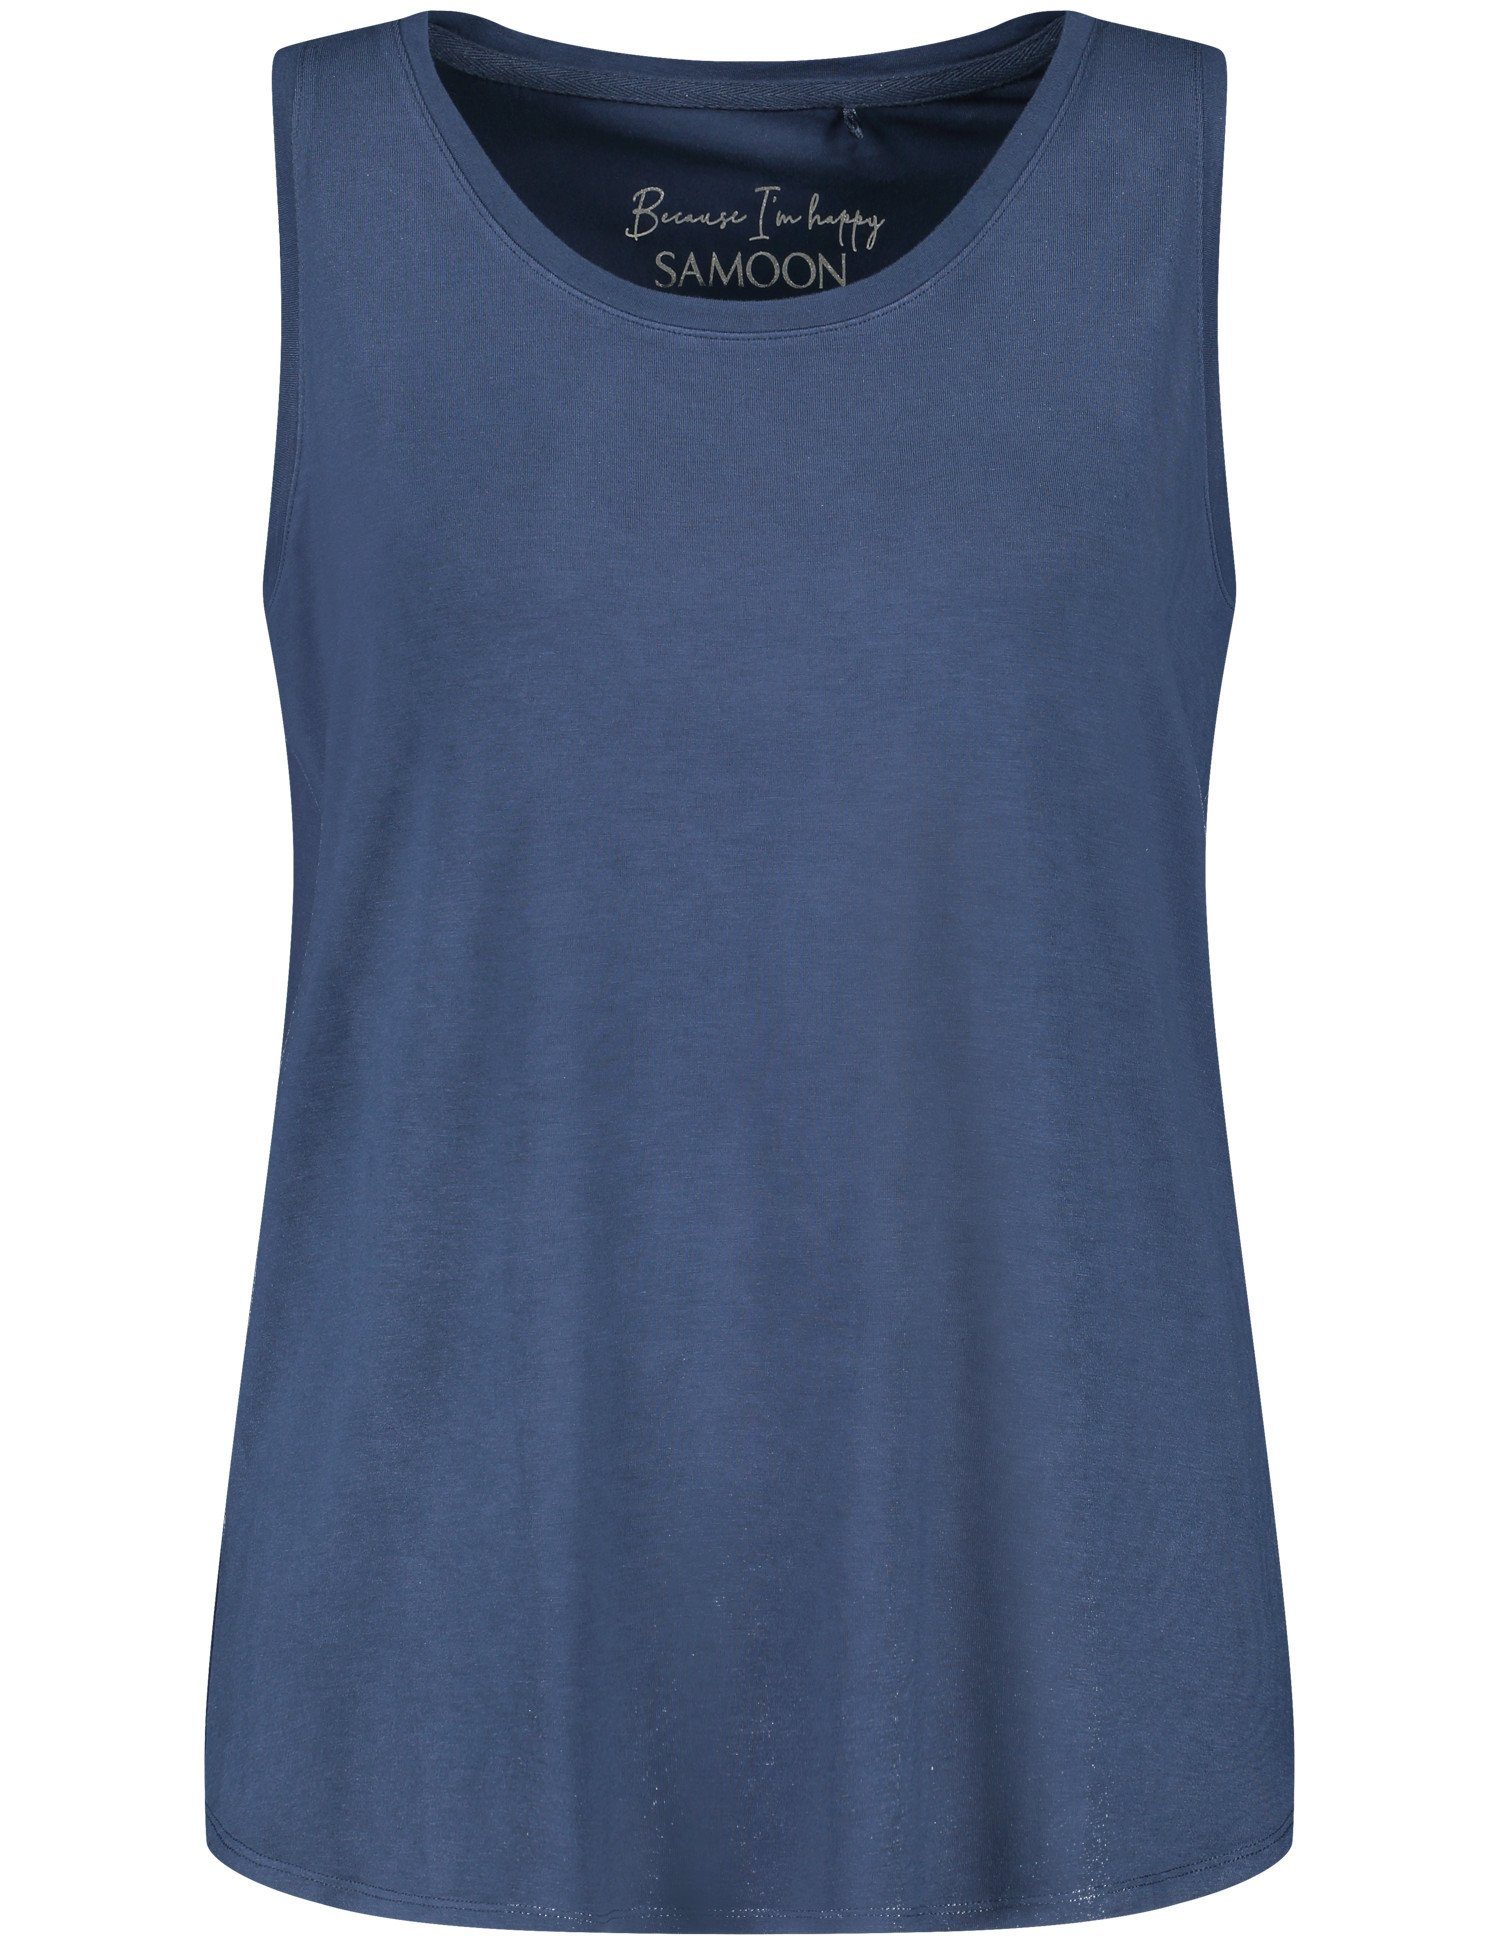 Mood Shirttop mit Seitenschlitzen Basic-Top Samoon Blue